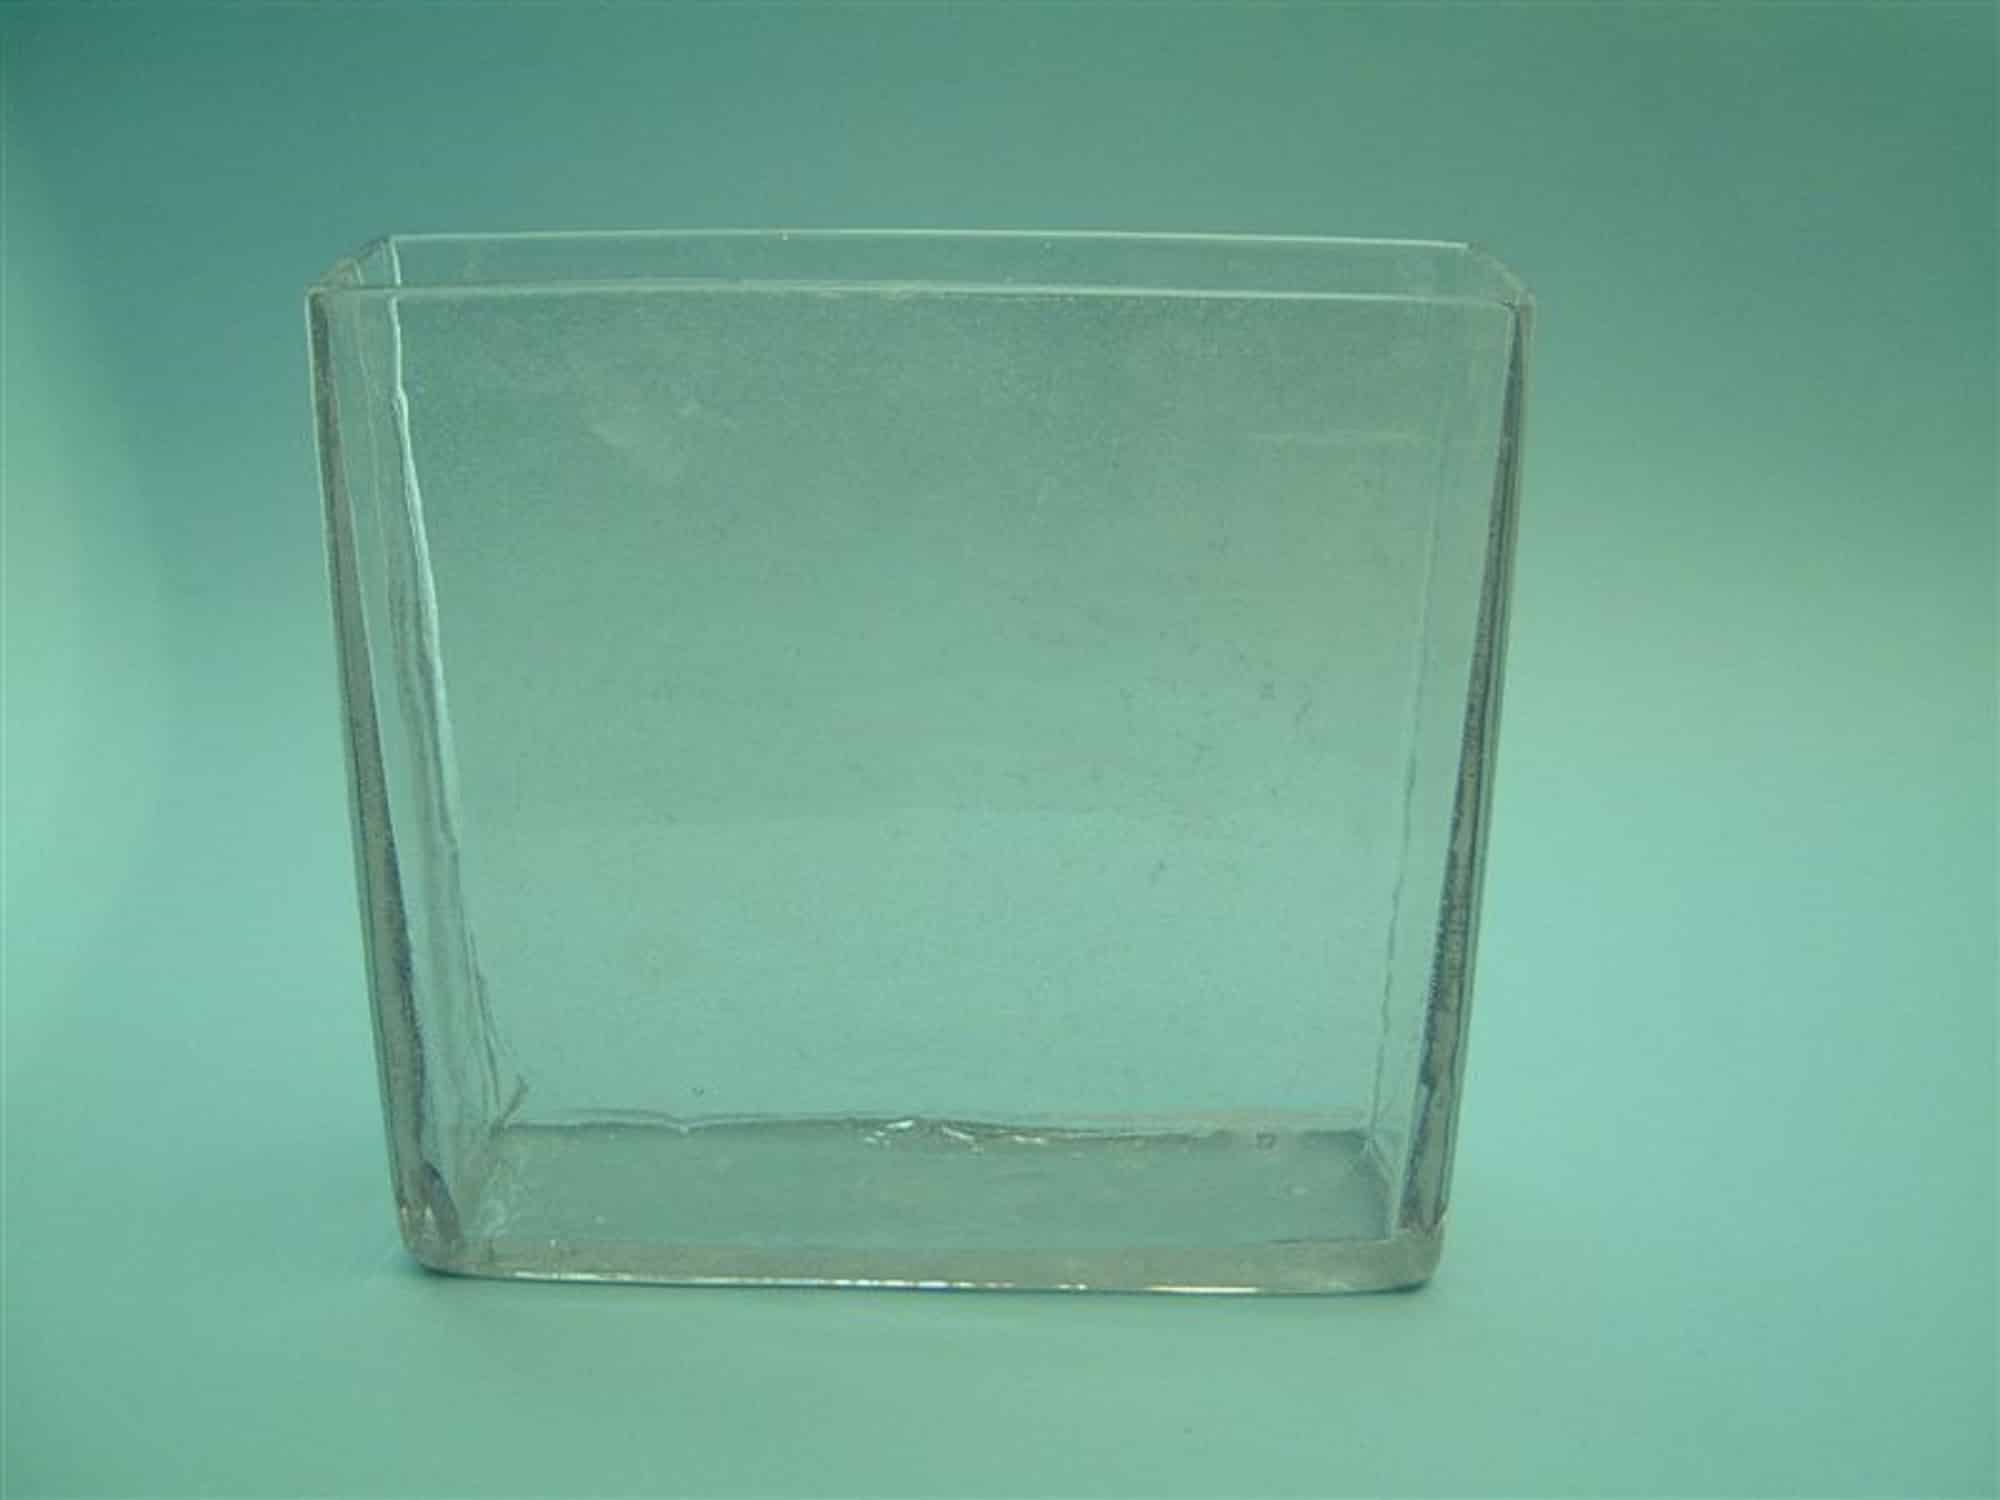 Laboratorium suikerglas bak. Doorzichtig suikerglas. Glazen bak, H 26 cm x L 25 cm x B 7 cm.